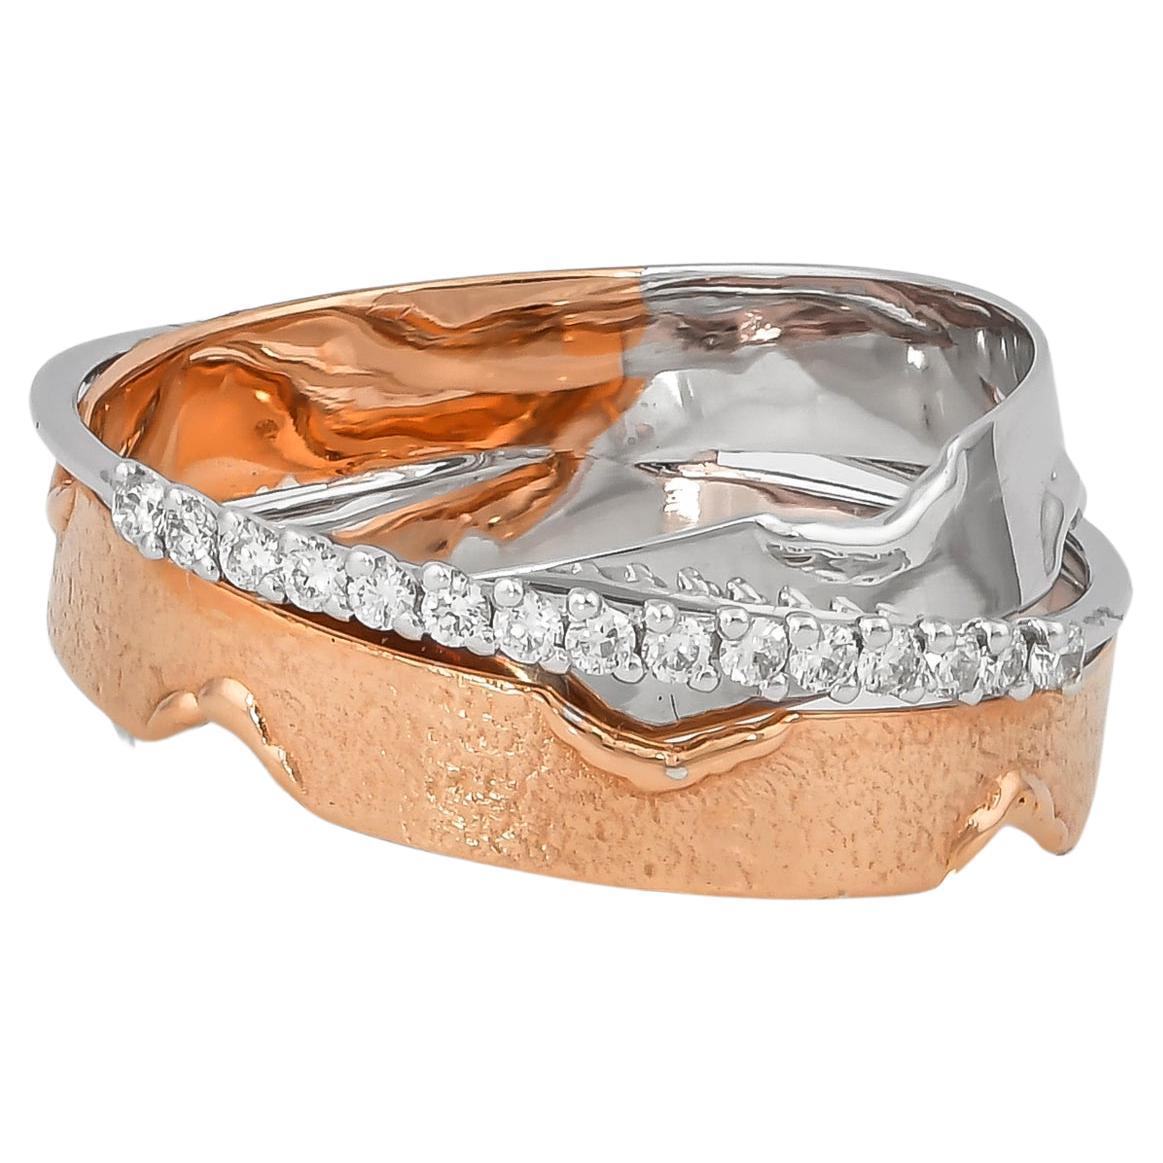 0.145 Carat Diamond Ring in 18 Karat White & Rose Gold For Sale